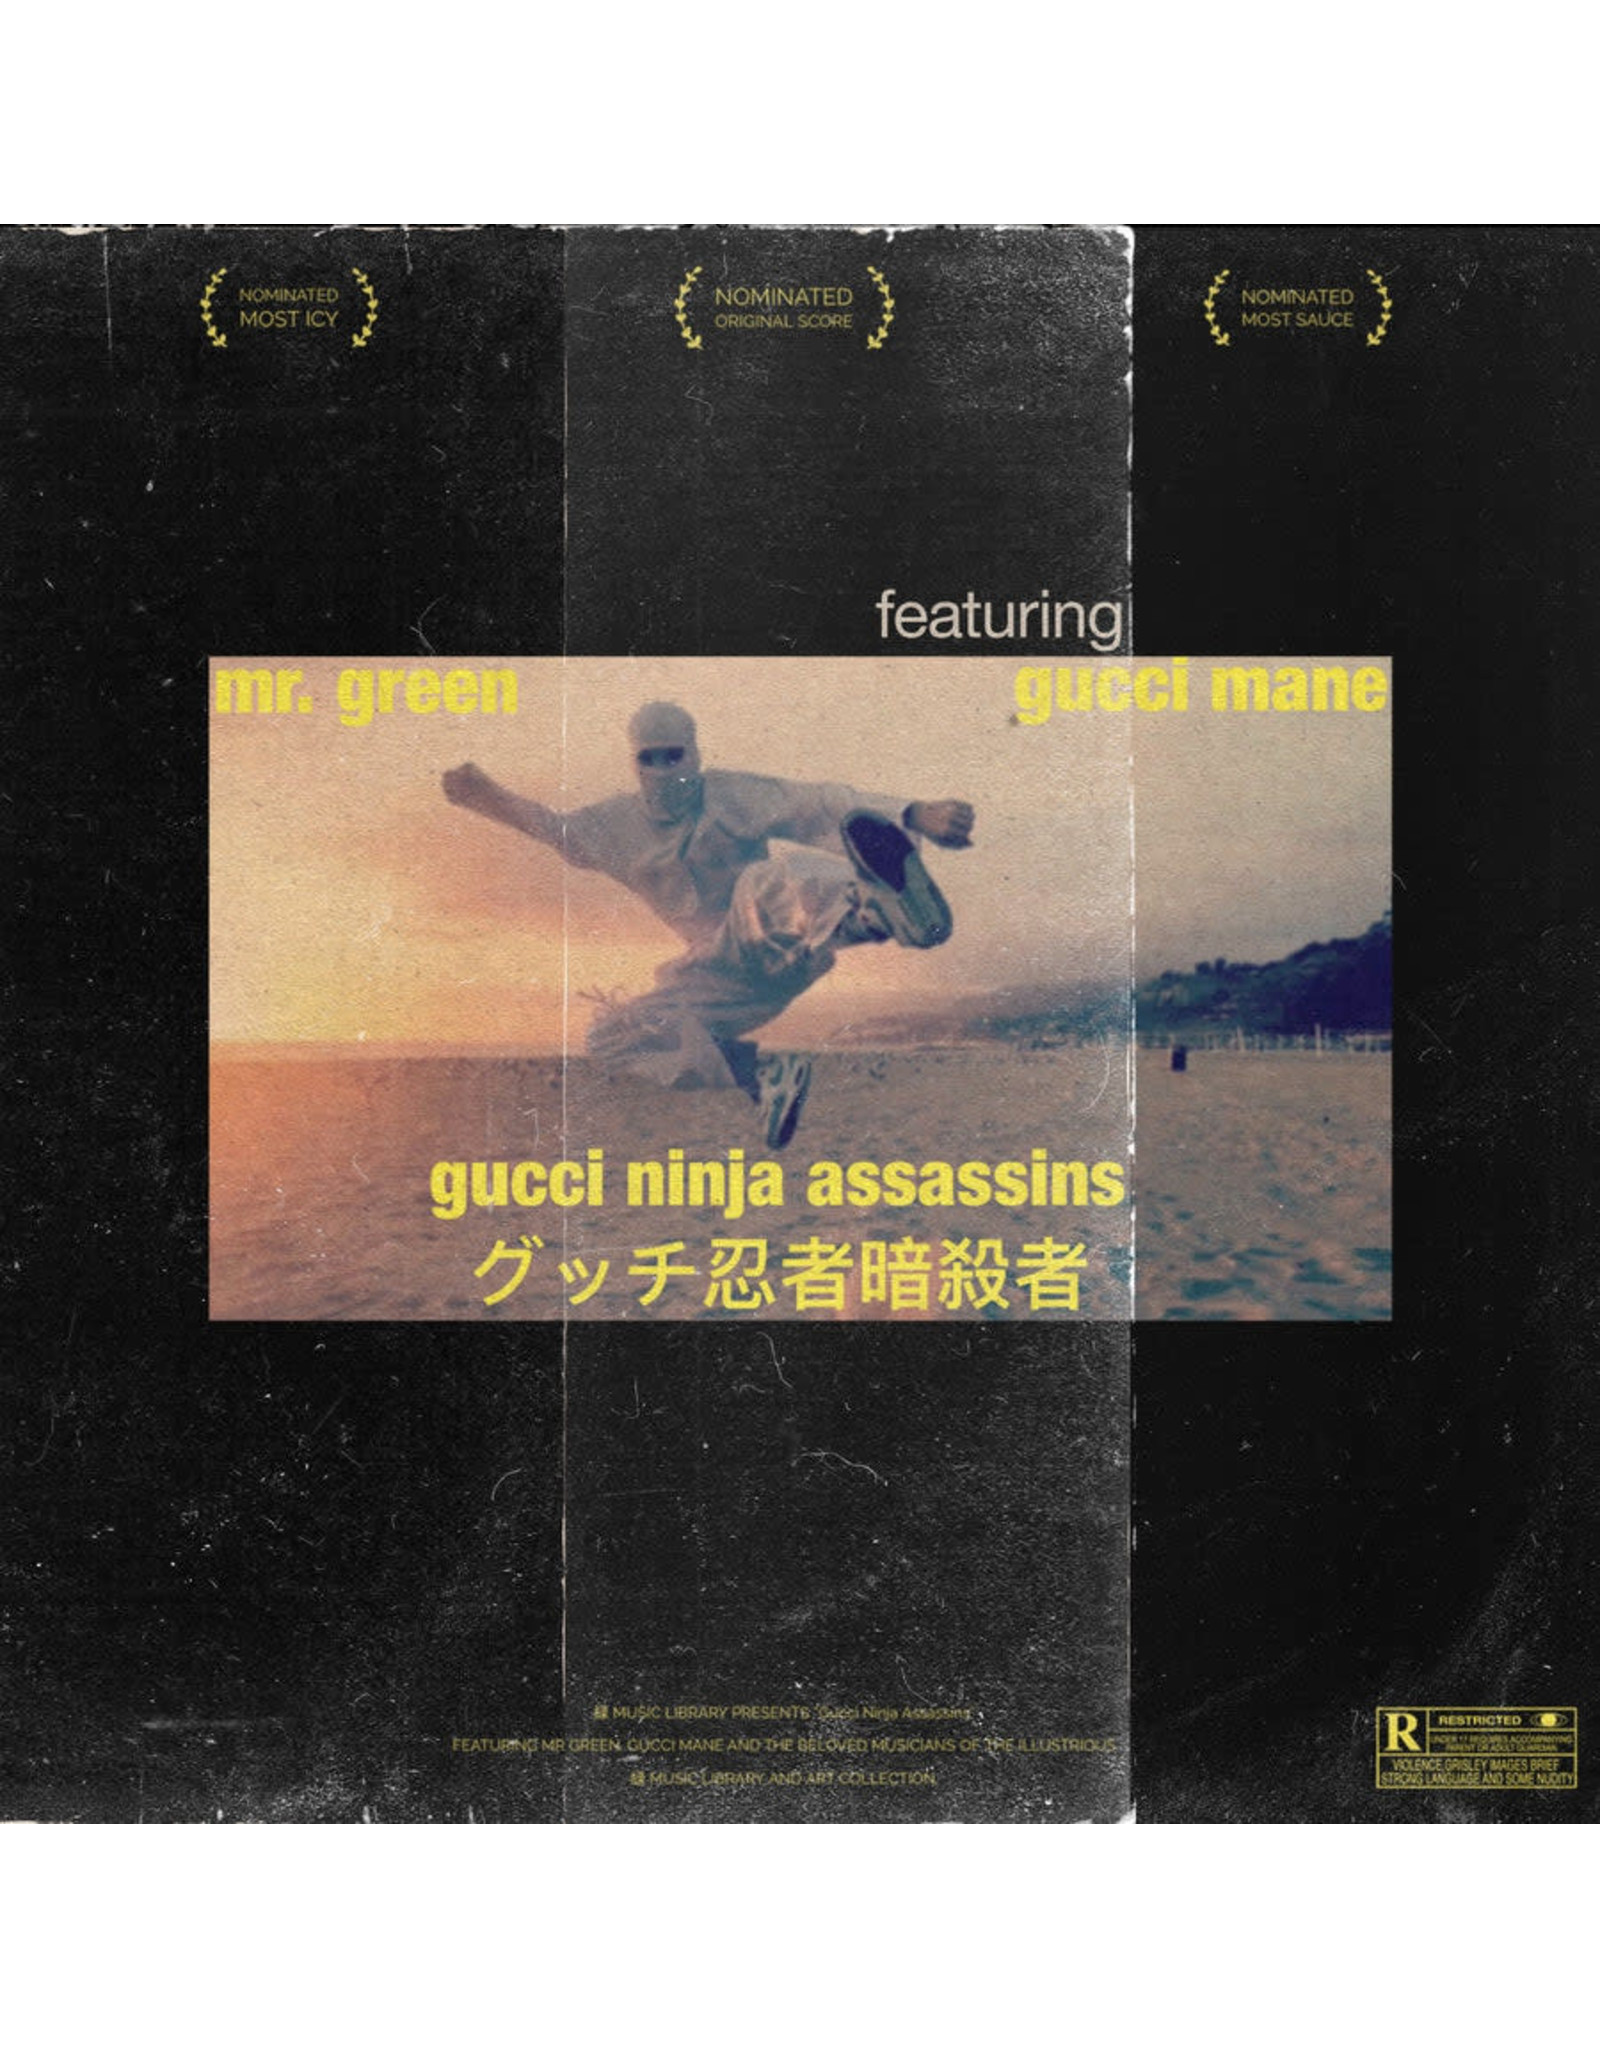 New Vinyl Mr. Green feat. Gucci Mane - Gucci Ninja Assassins 7"